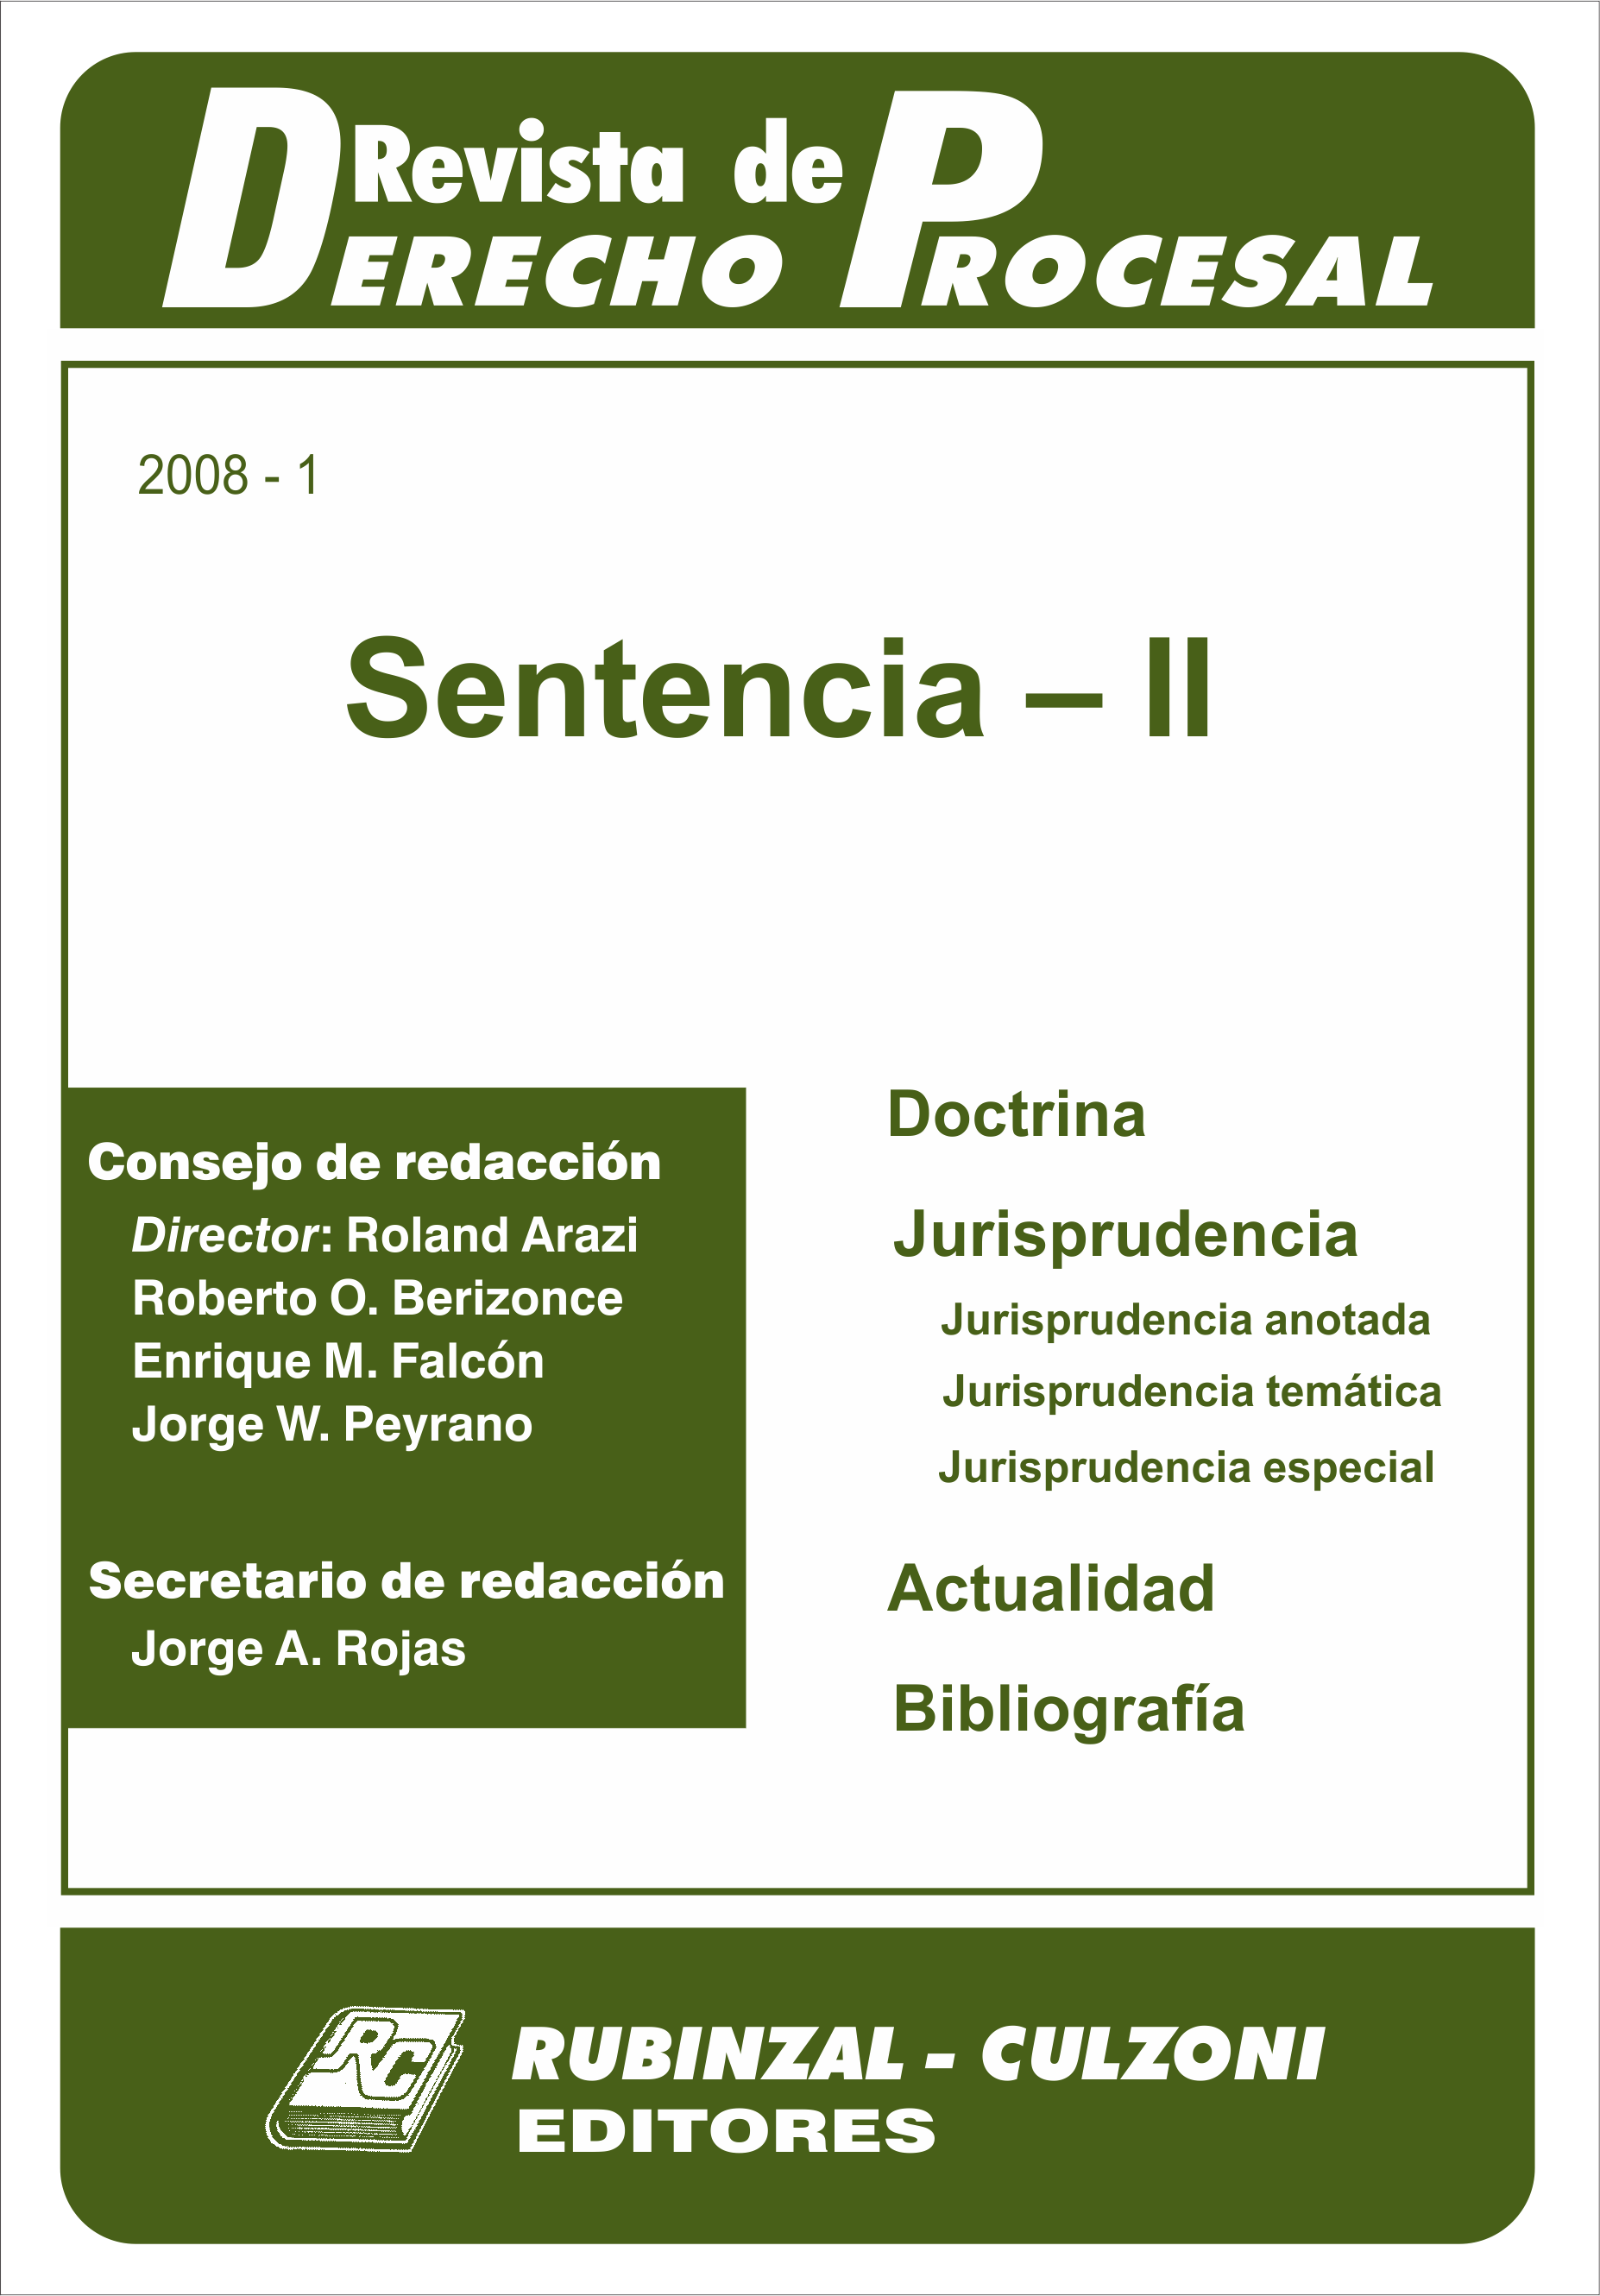 Revista de Derecho Procesal - Sentencia - II.